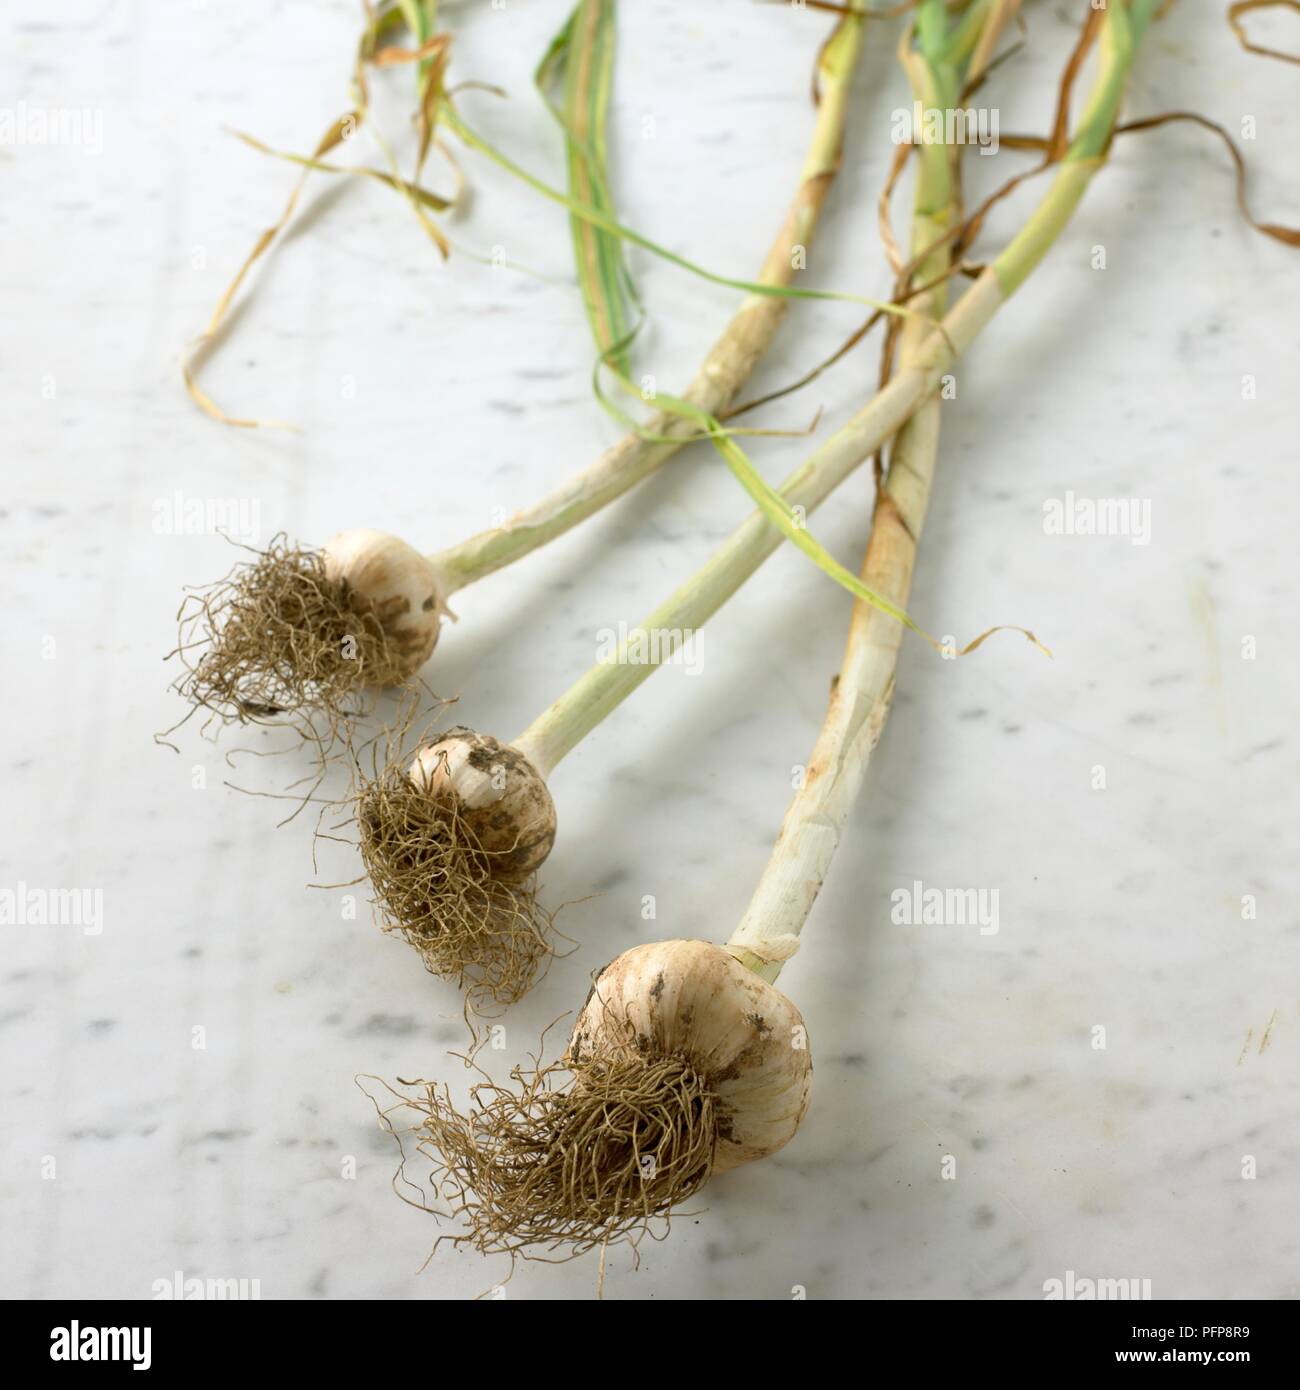 Tre organici bulbi di aglio con le loro radici e gambi ancora attaccato sulla superficie di marmo Foto Stock